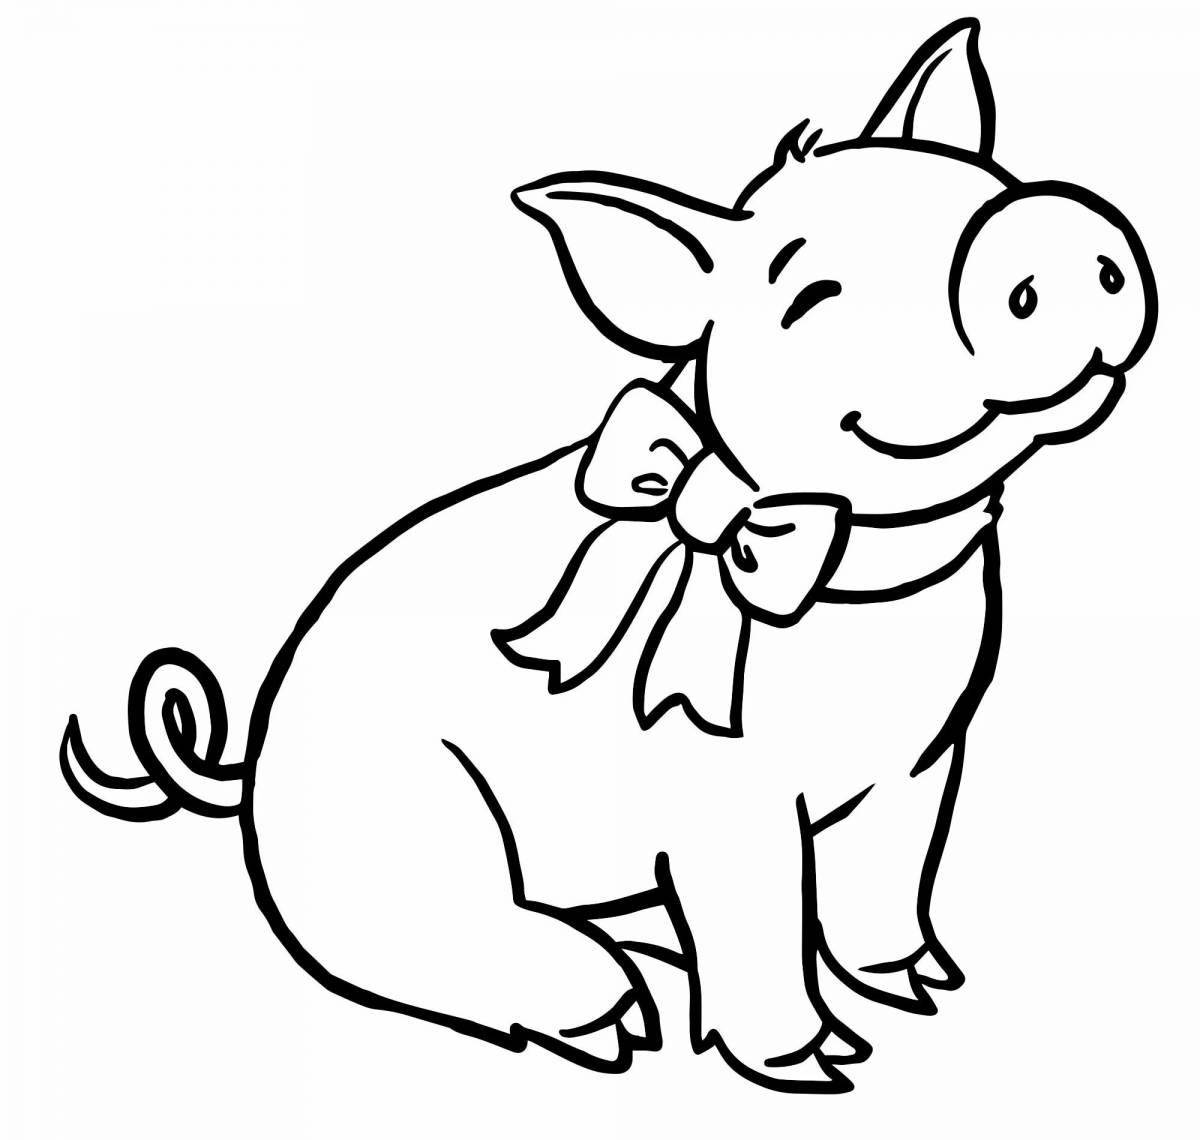 Улыбающаяся раскраска свинья для детей